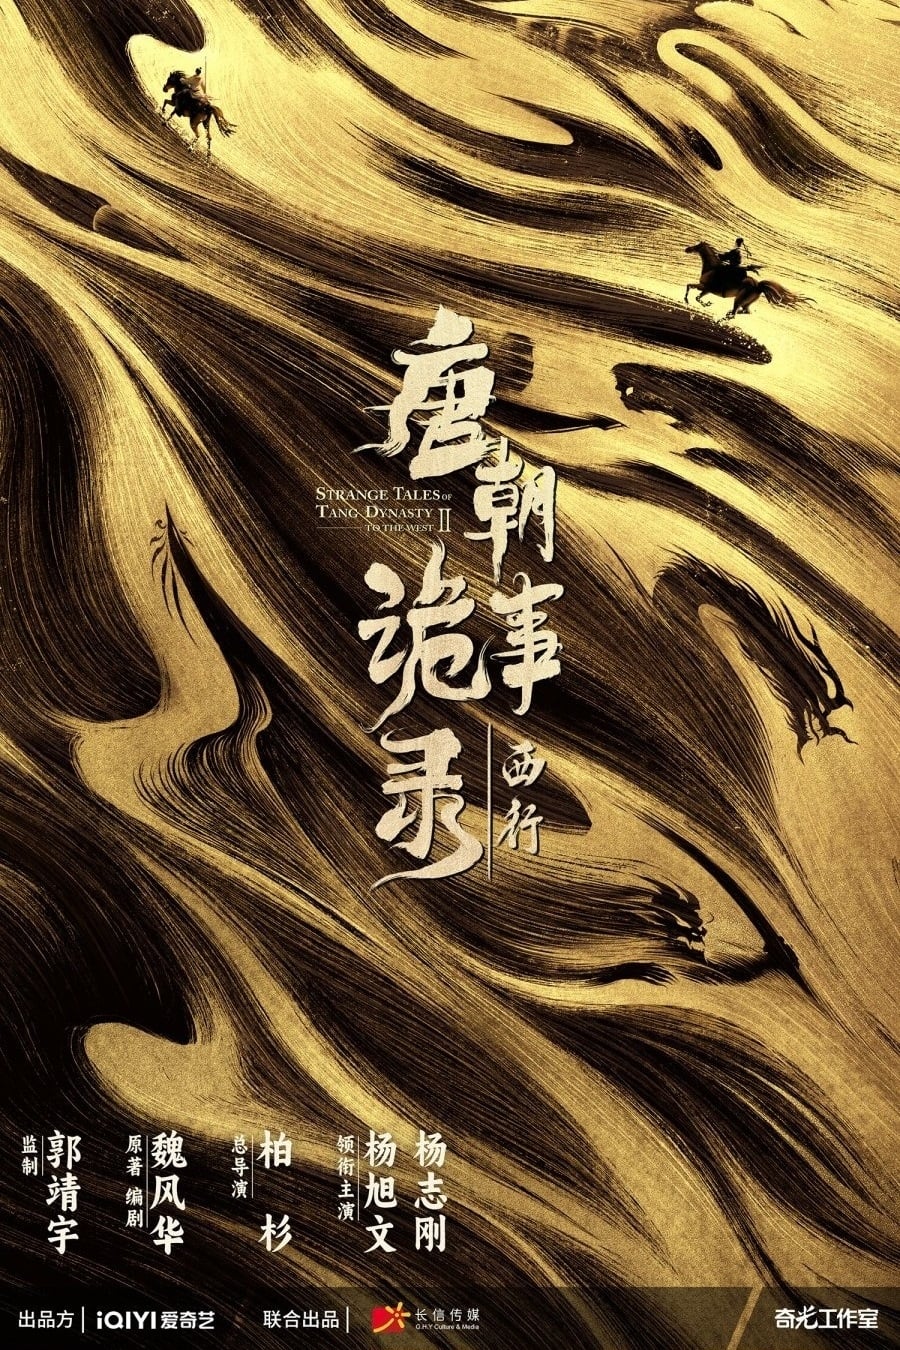 مسلسل Strange Tales of Tang Dynasty موسم 2 حلقة 25